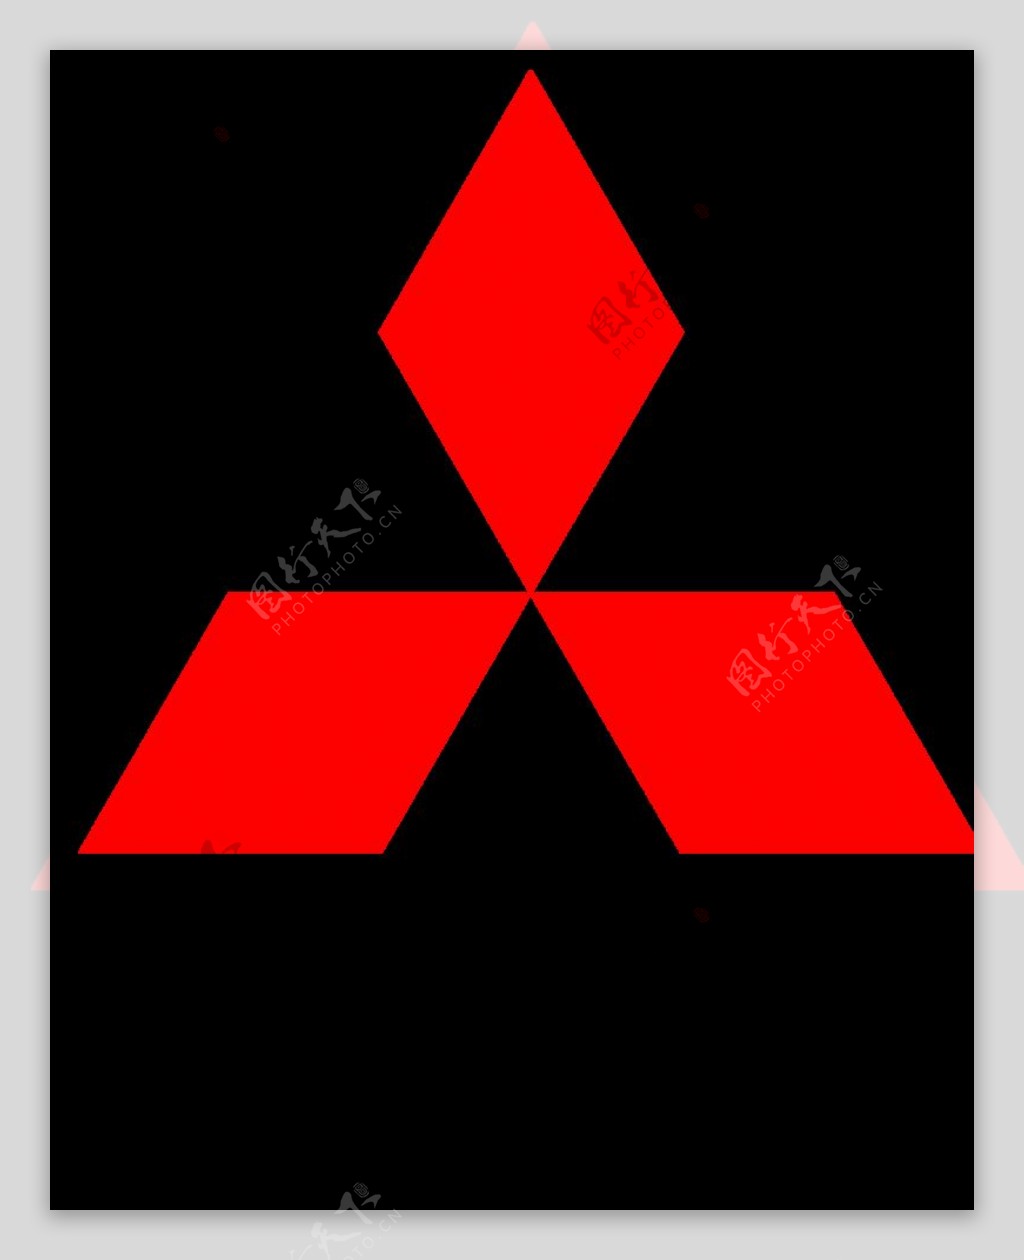 三菱logo